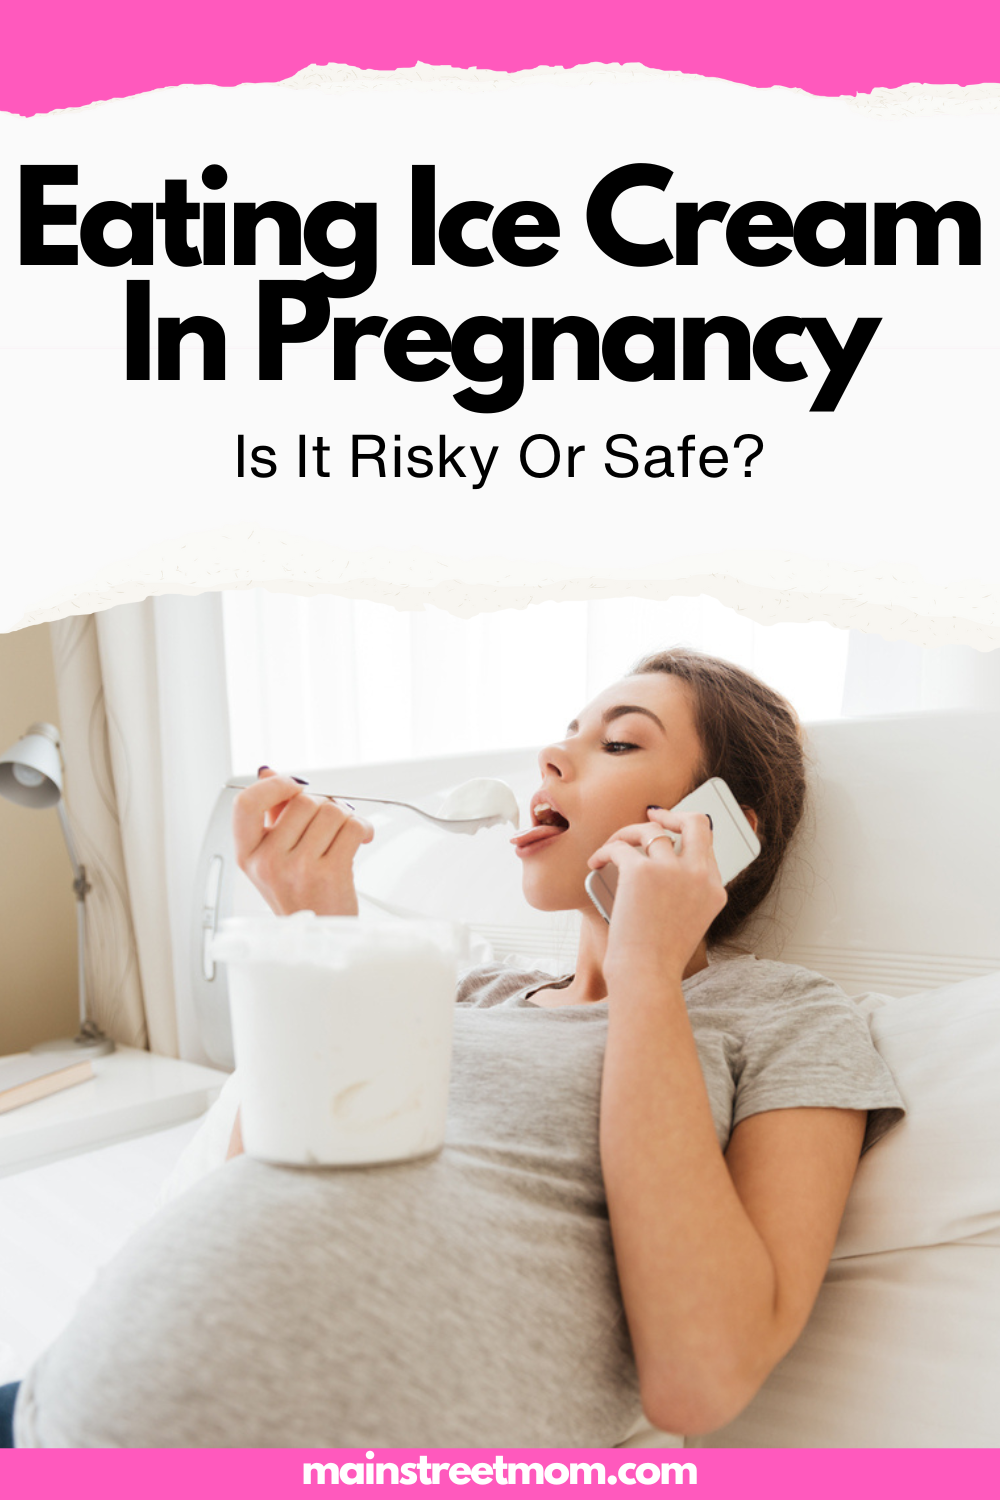 Speiseeis in der Schwangerschaft: Ist es riskant oder sicher?